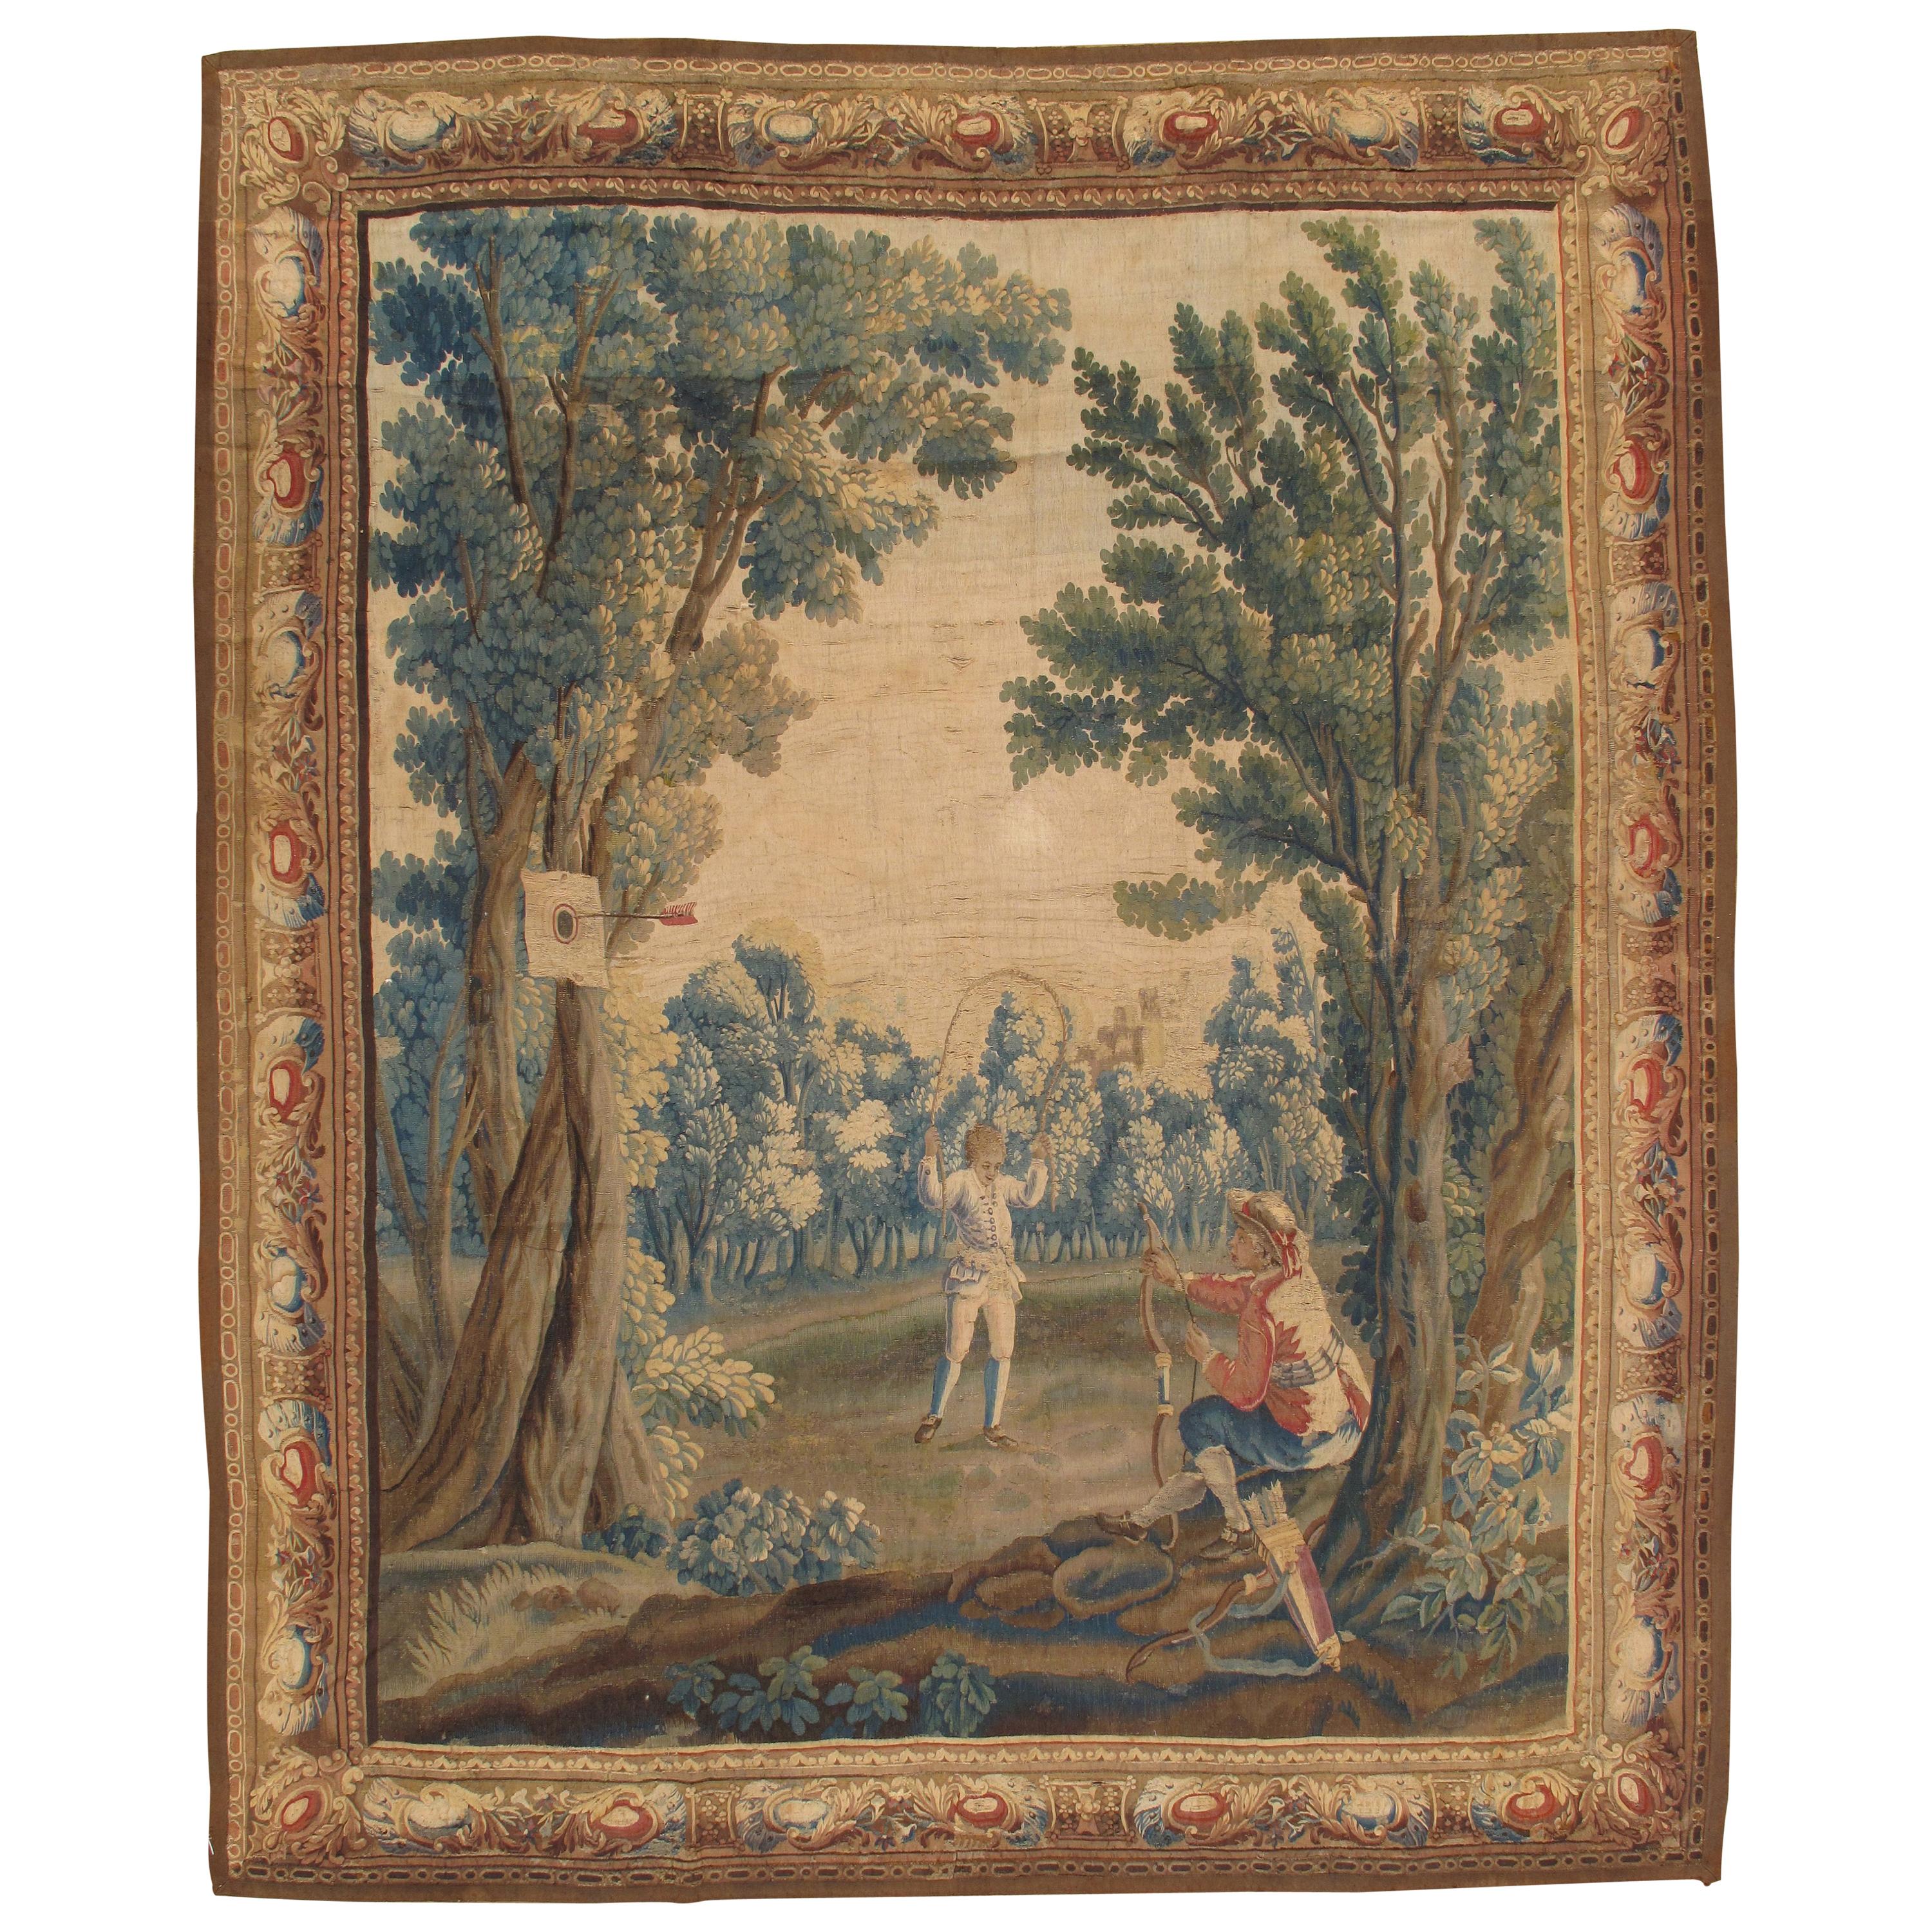 Tapisserie de Bruxelles du début du XVIIIe siècle, finement tissée, rouge, bleu, vert, soie et laine